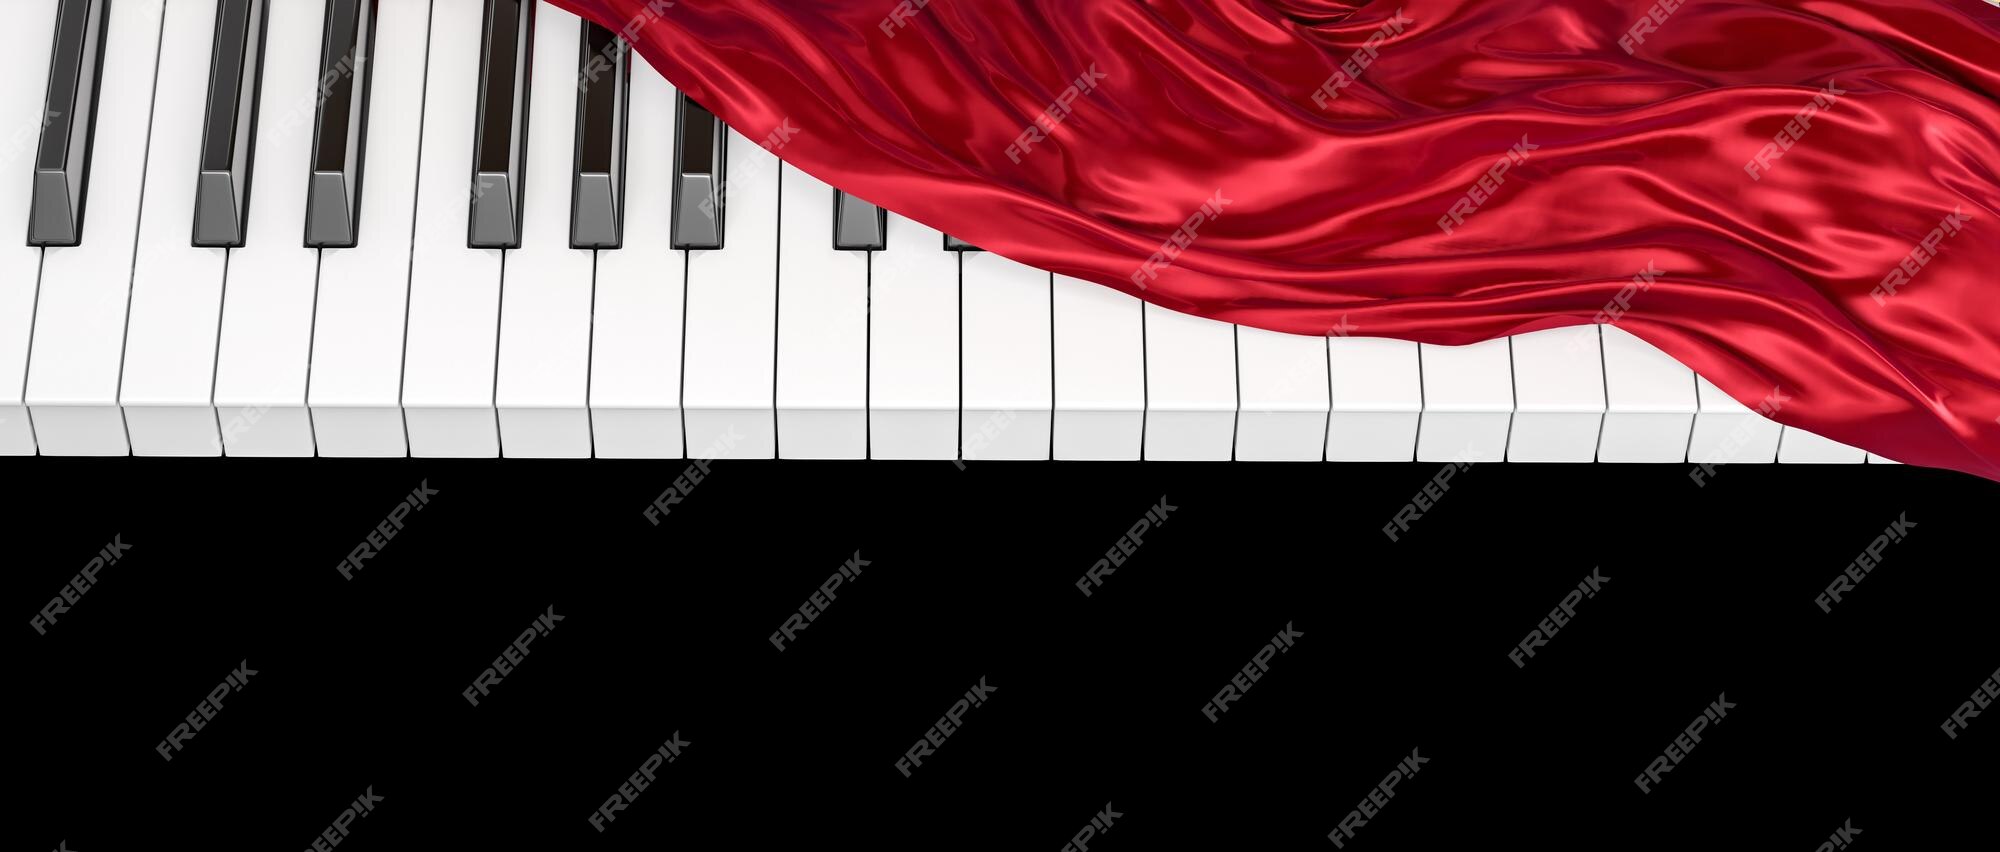 simbólico Emular su Drapery cubre parcialmente el render 3d del teclado del piano | Foto Premium